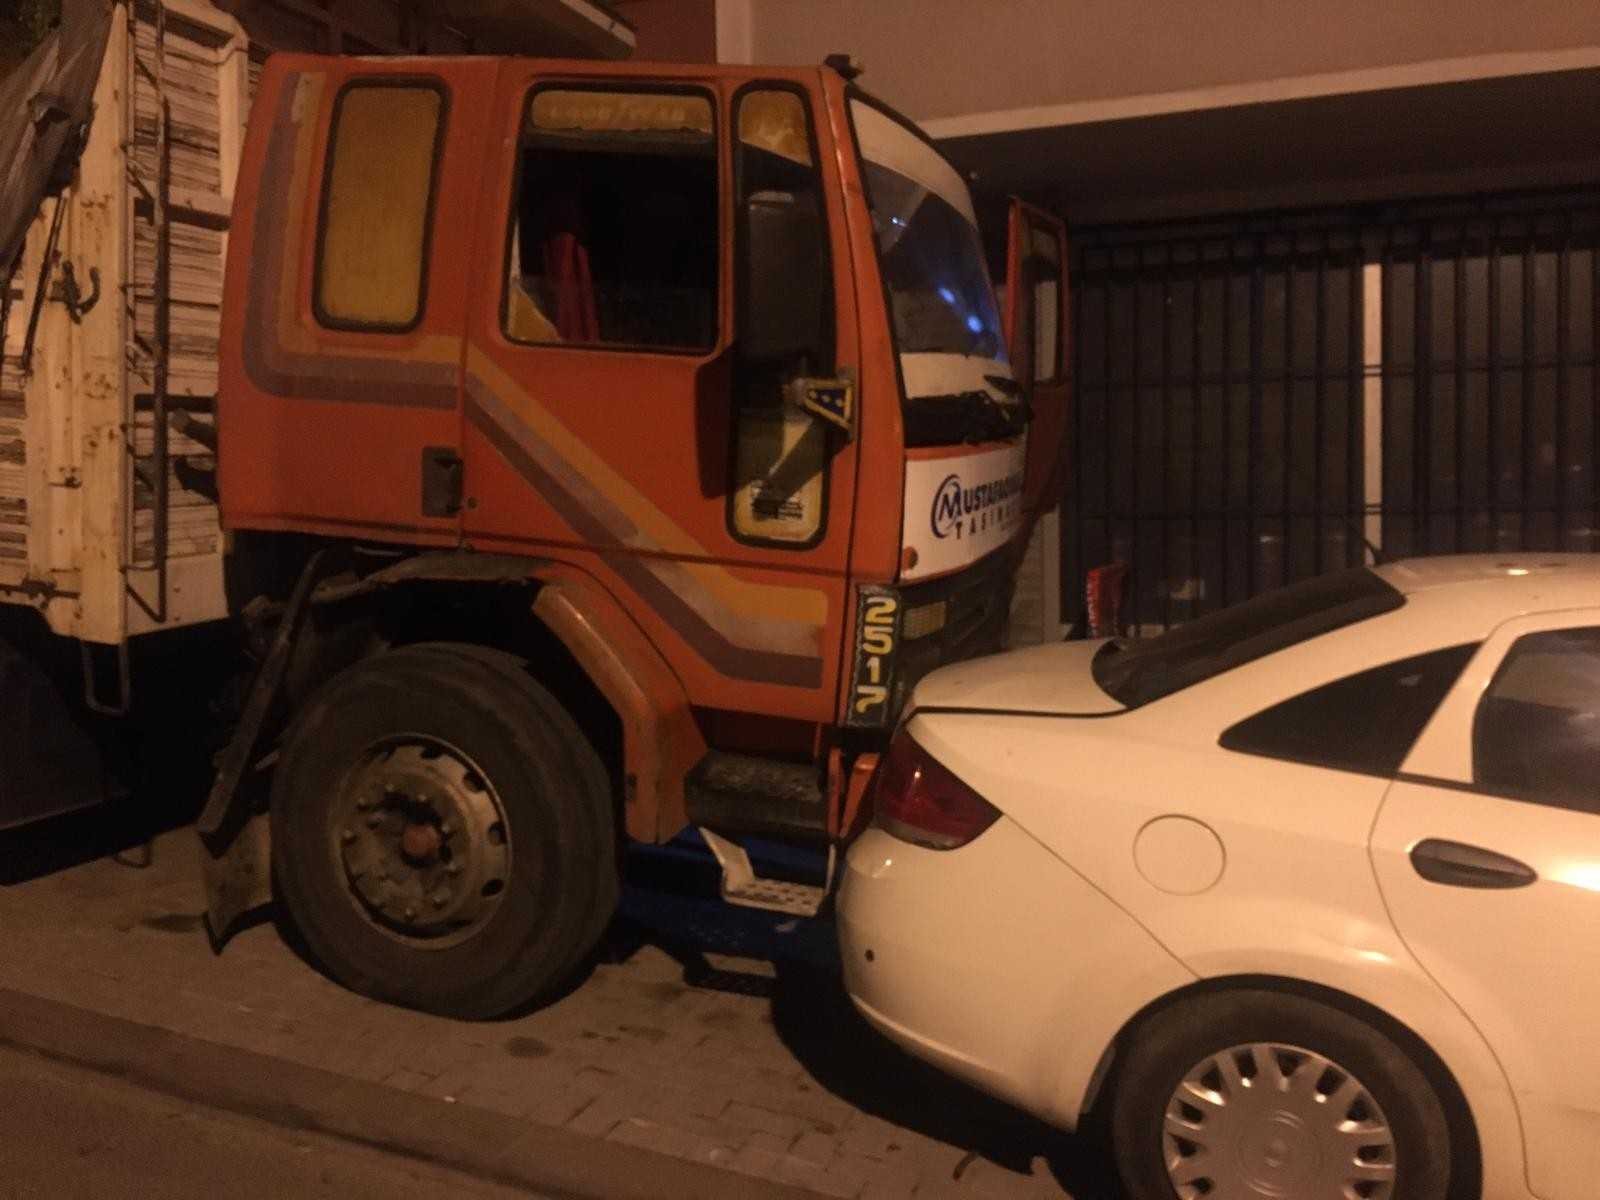 Güngören’de freni boşalan kamyon 8 araca çarptı...Araç sahipleri sürücüye piknik tüpüyle saldırdı #istanbul